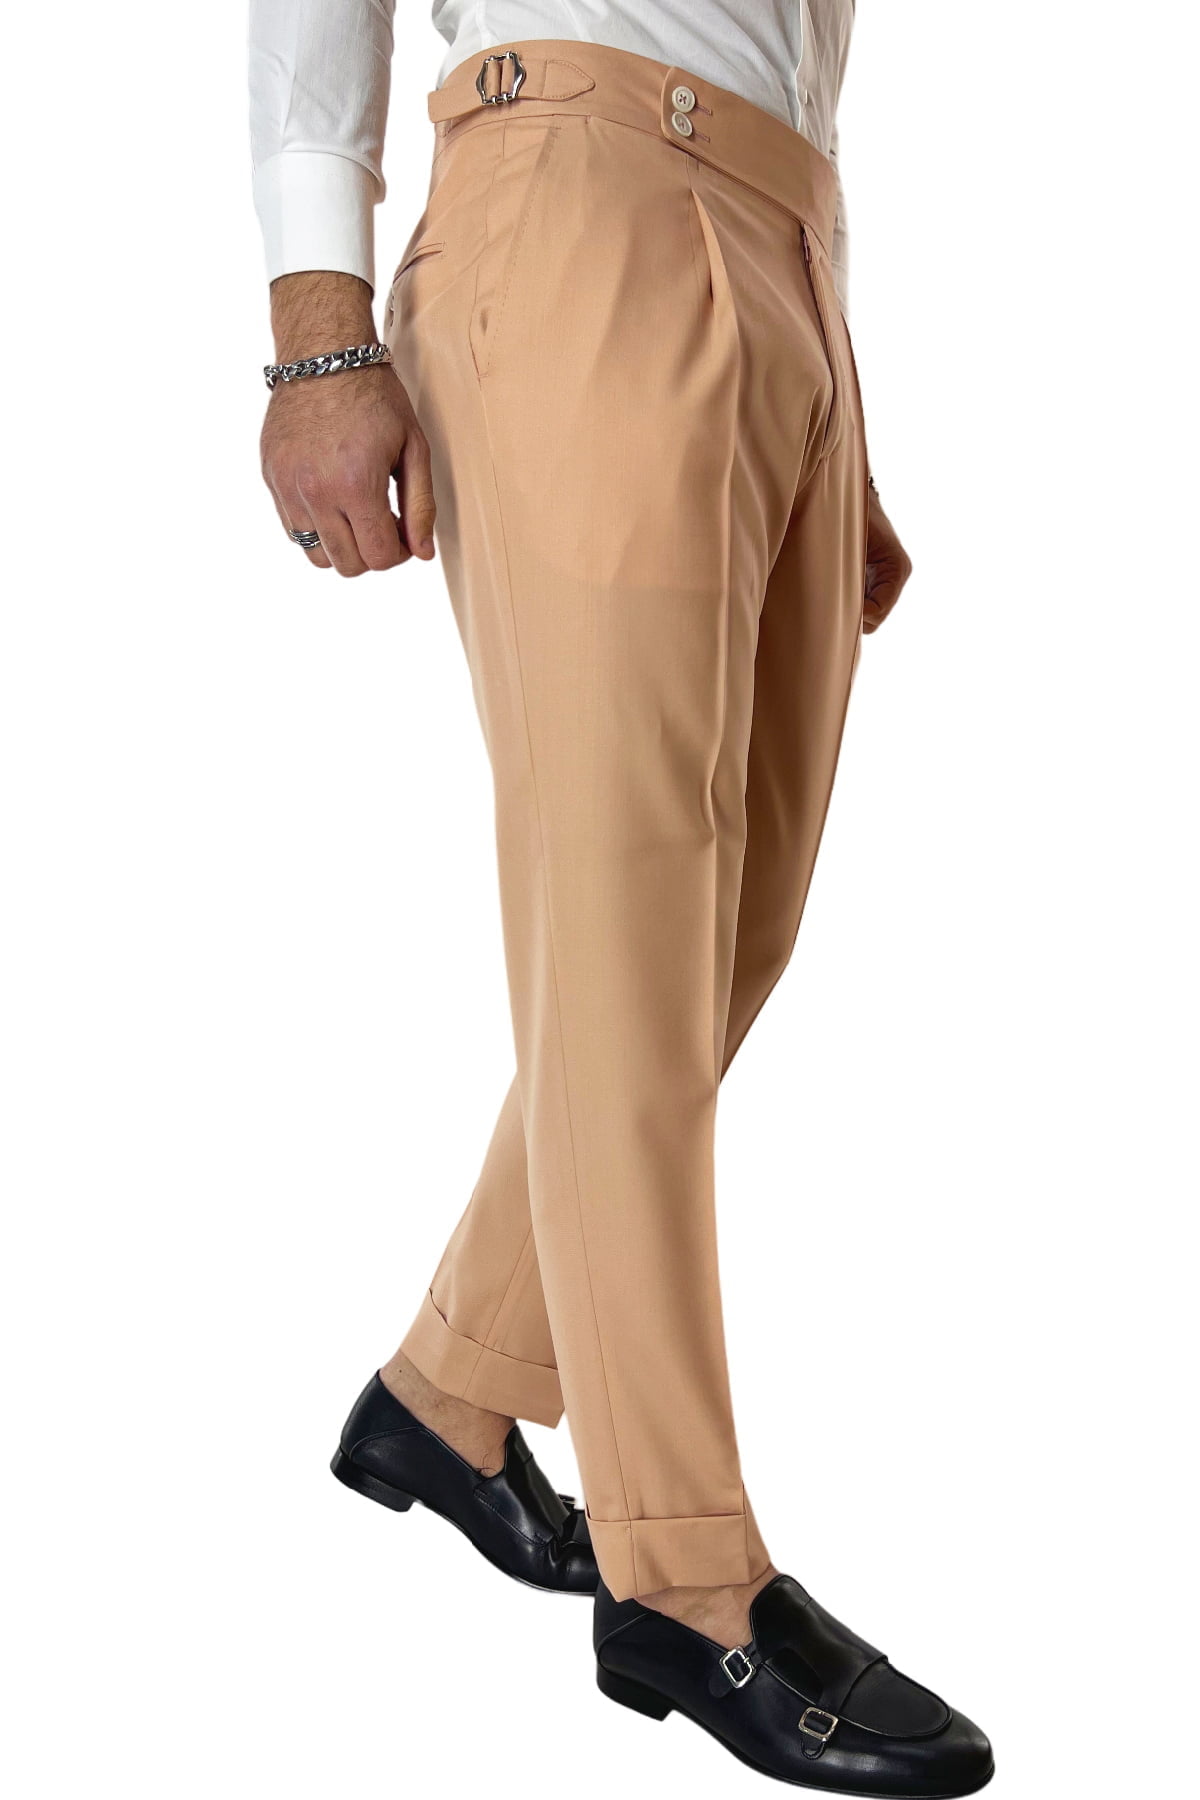 Pantalone uomo Pesca in fresco lana 140's Holland & Sherry vita alta con pinces fibbie laterali e risvolto 4cm